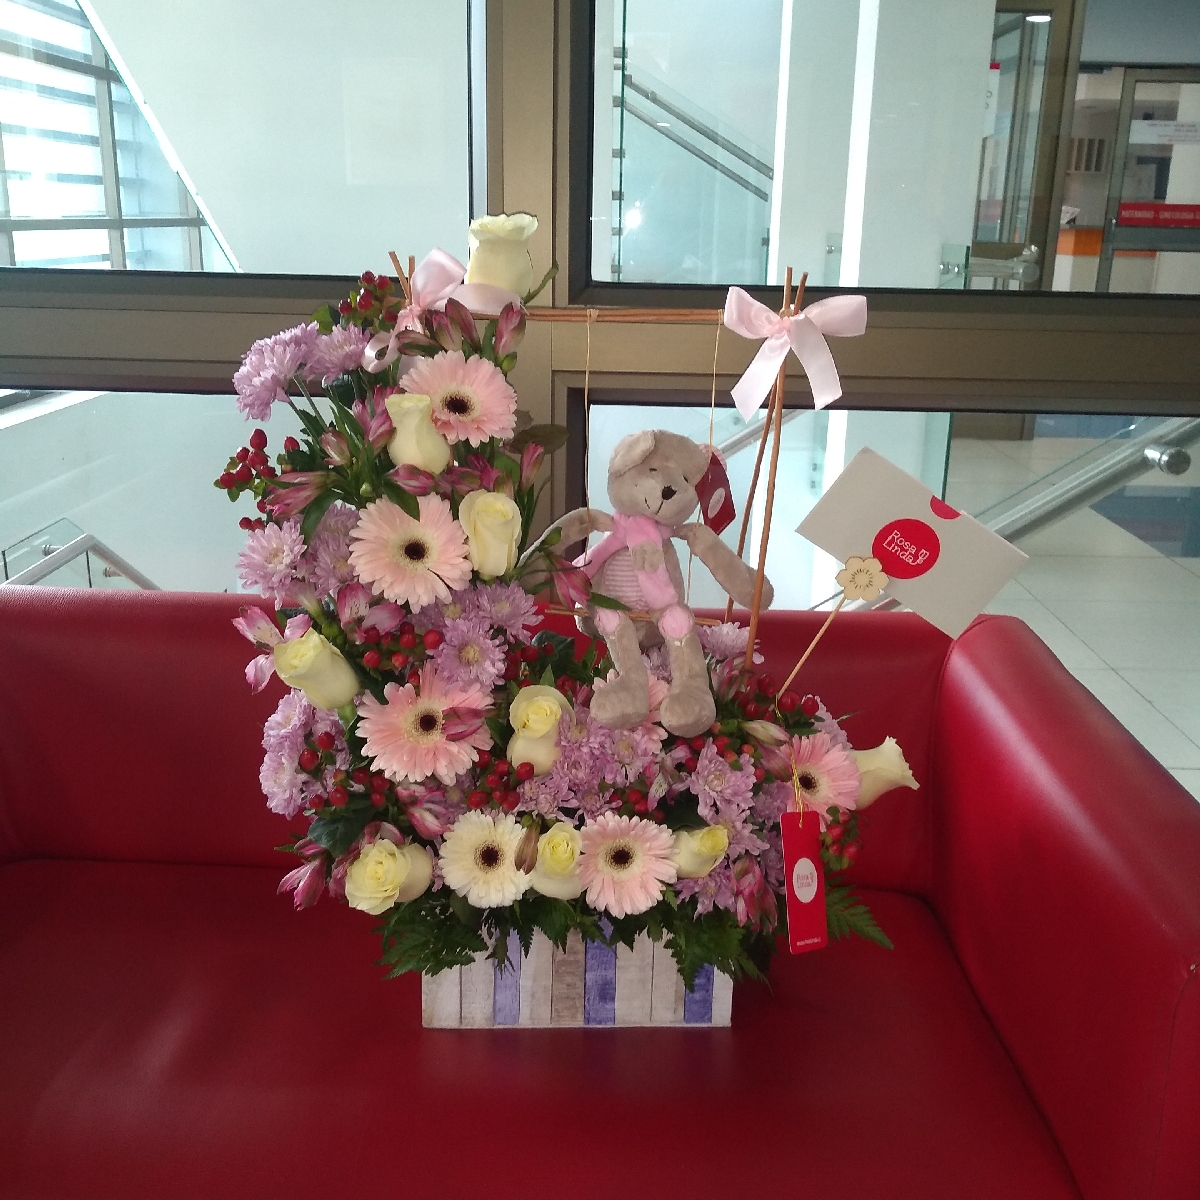 Osita en el jardín - Arreglo floral de nacimiento con peluche de osita en tonos blancos y rosados - Pedido 204283